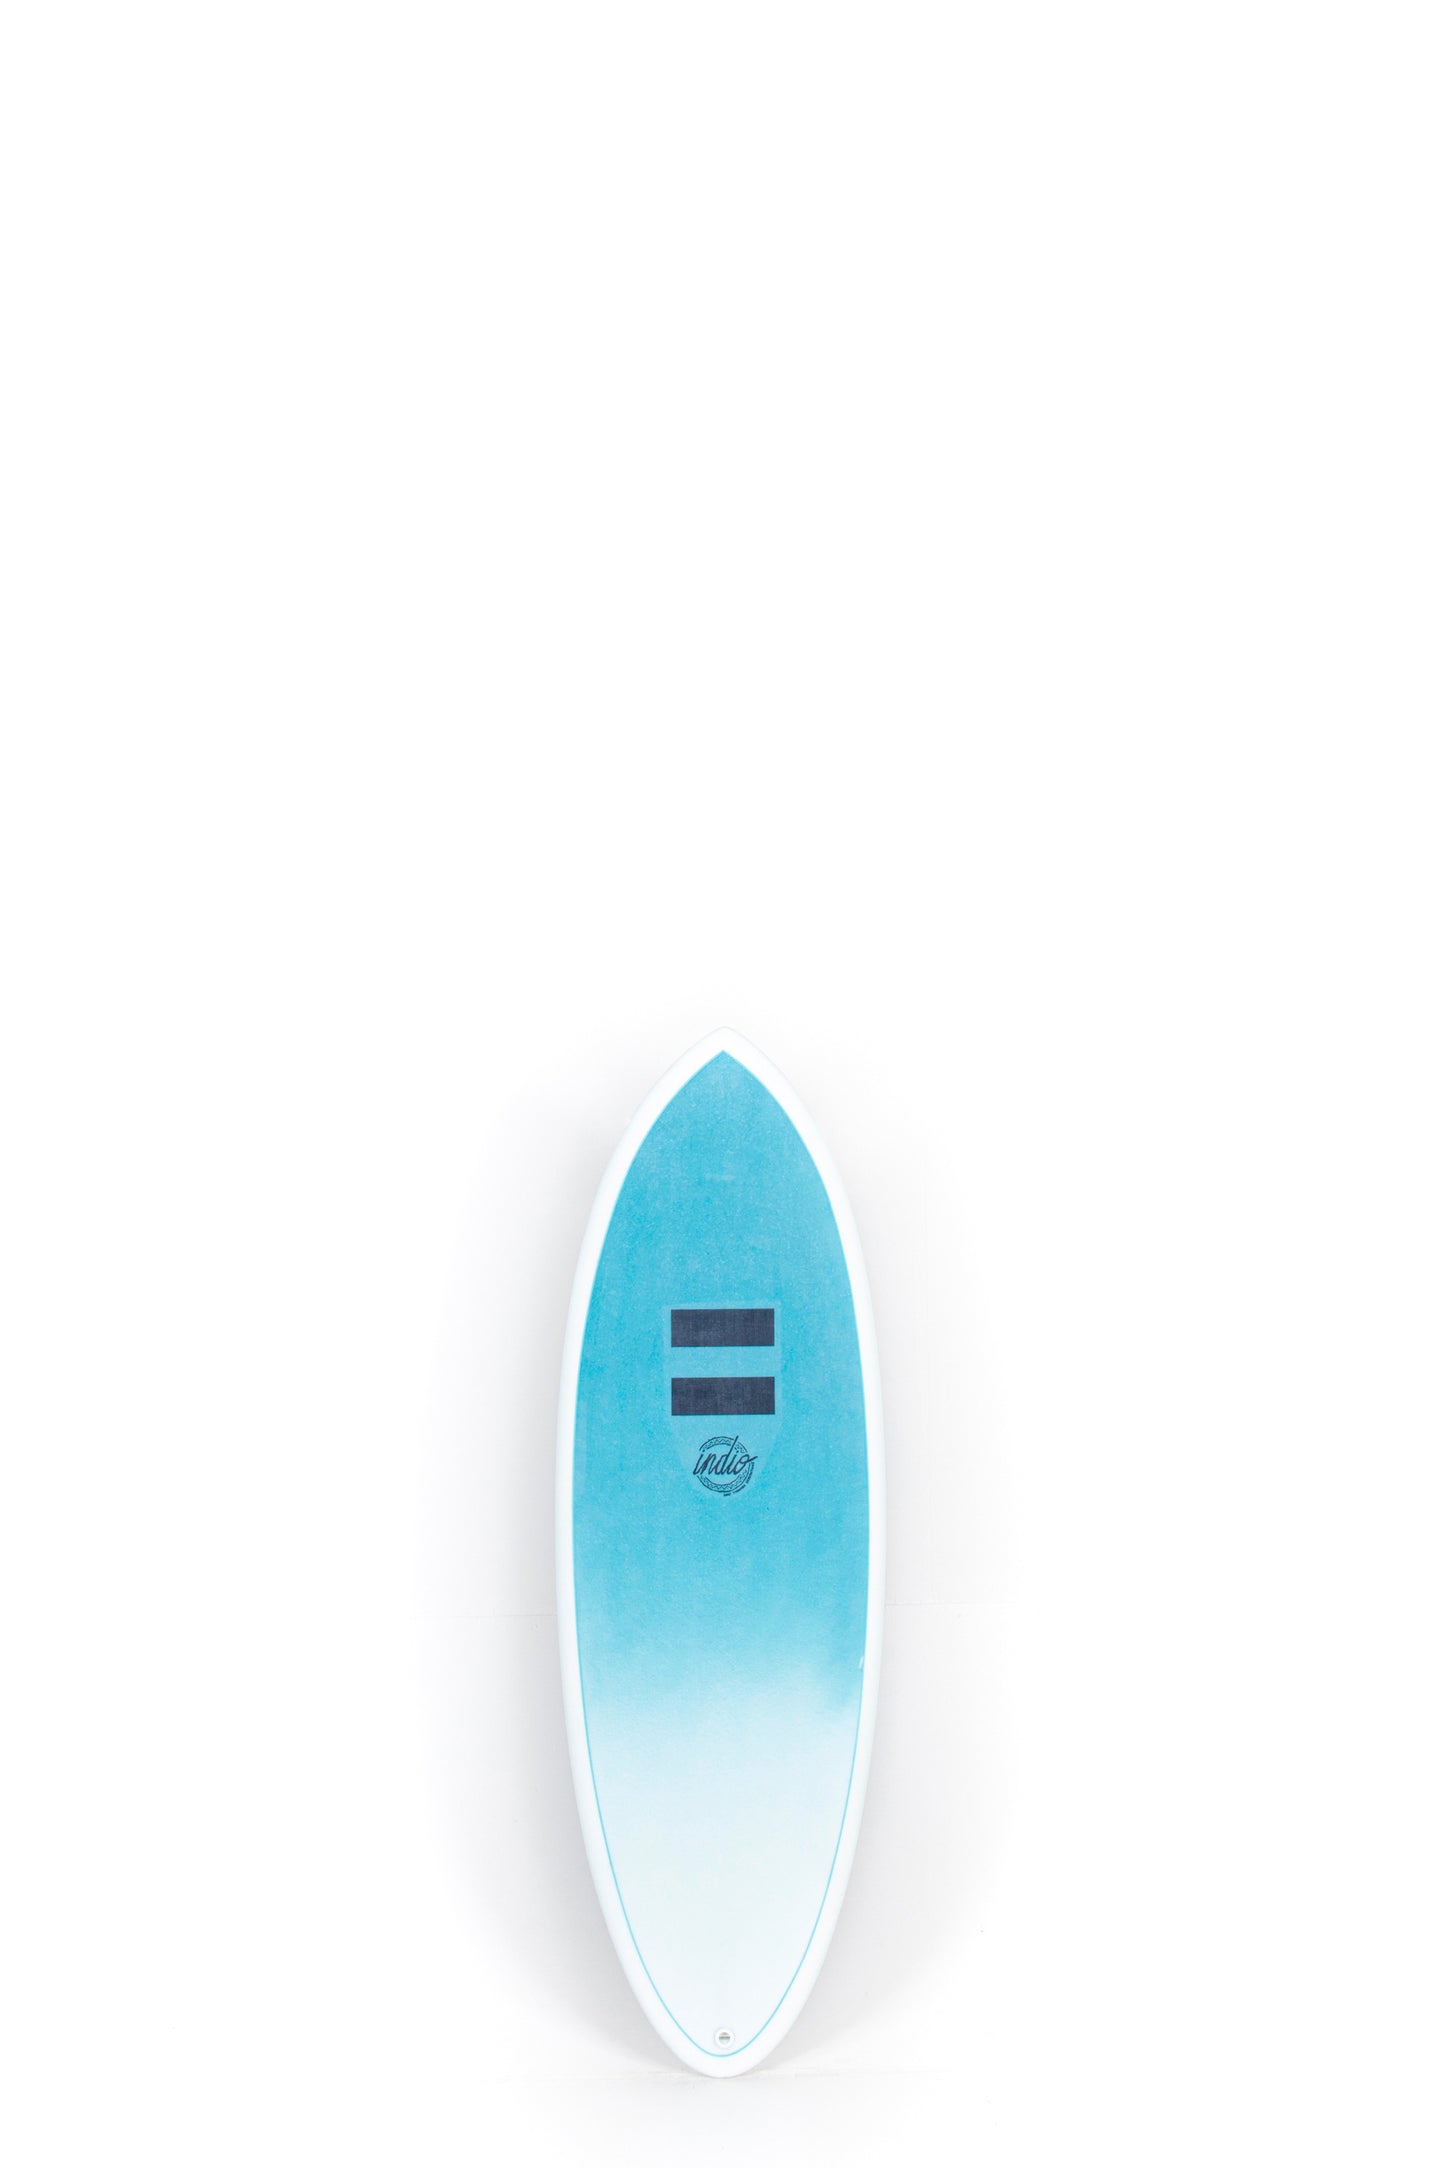 Pukas-Surf-Shop-INDIO-Endurance-Racer-4'11'-Aqua-Blue-Carbon